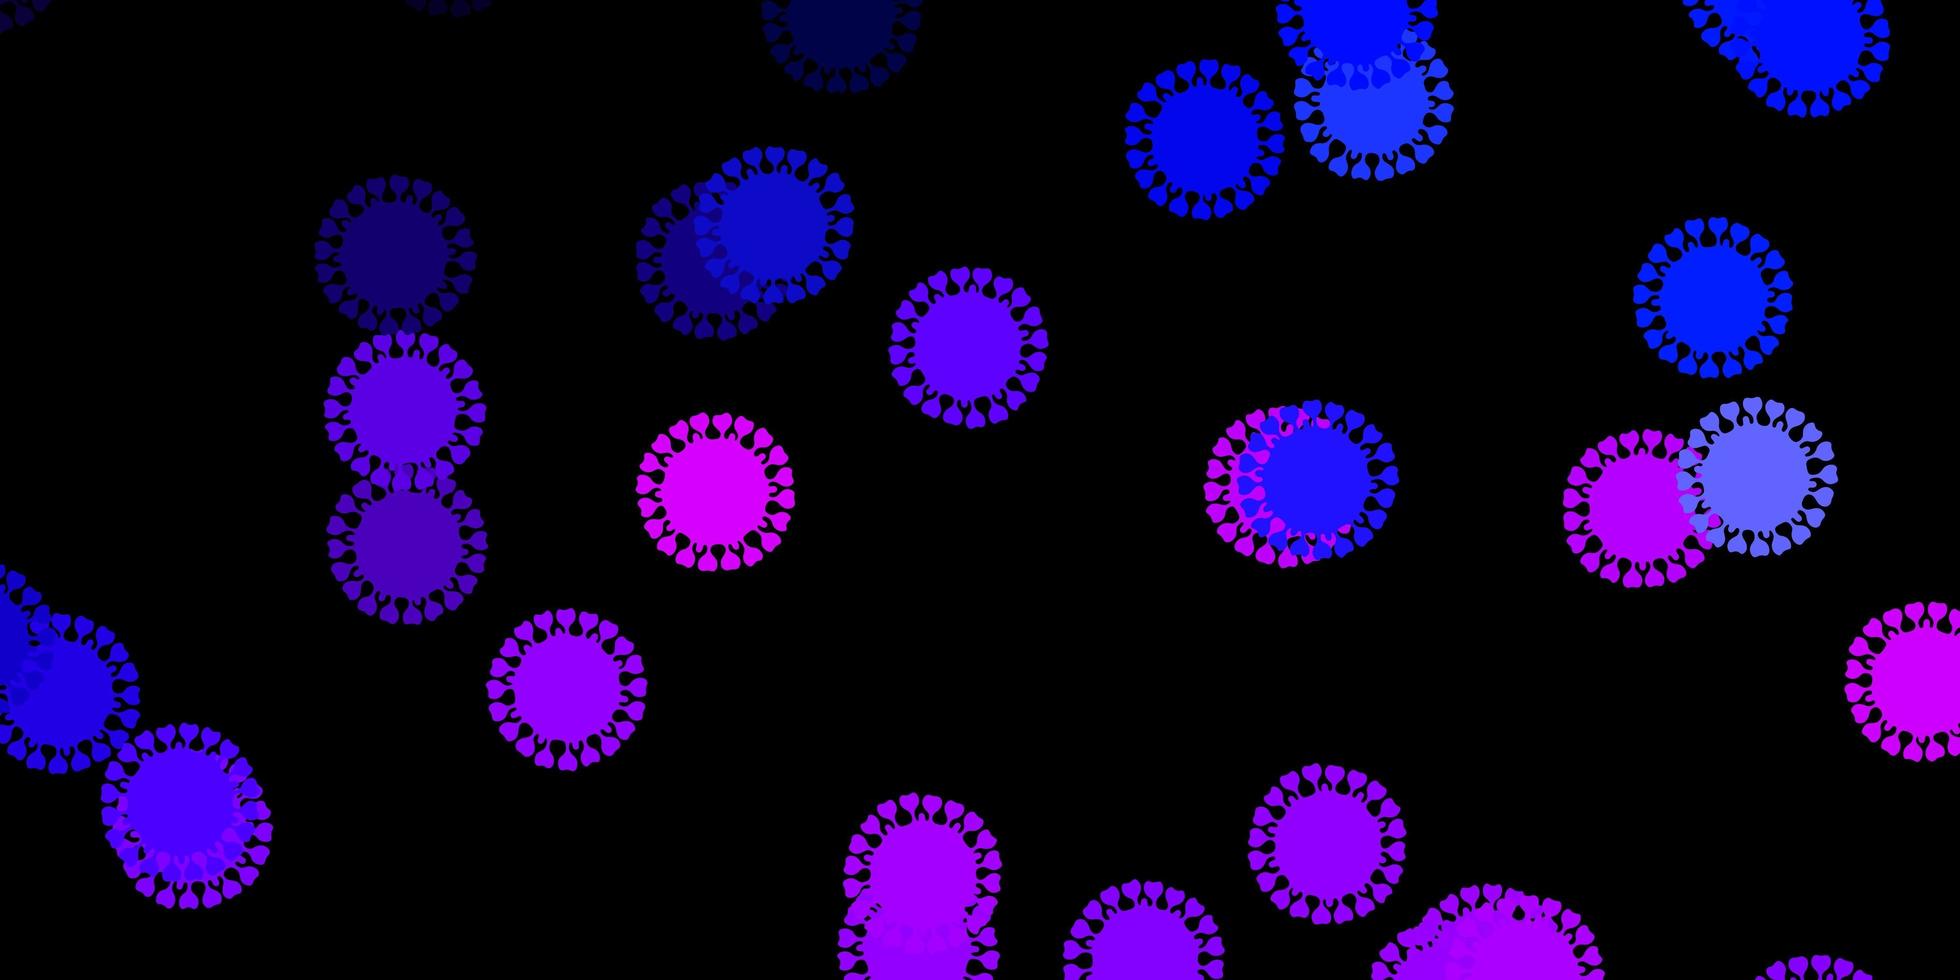 mörkrosa, blå vektorbakgrund med virussymboler vektor